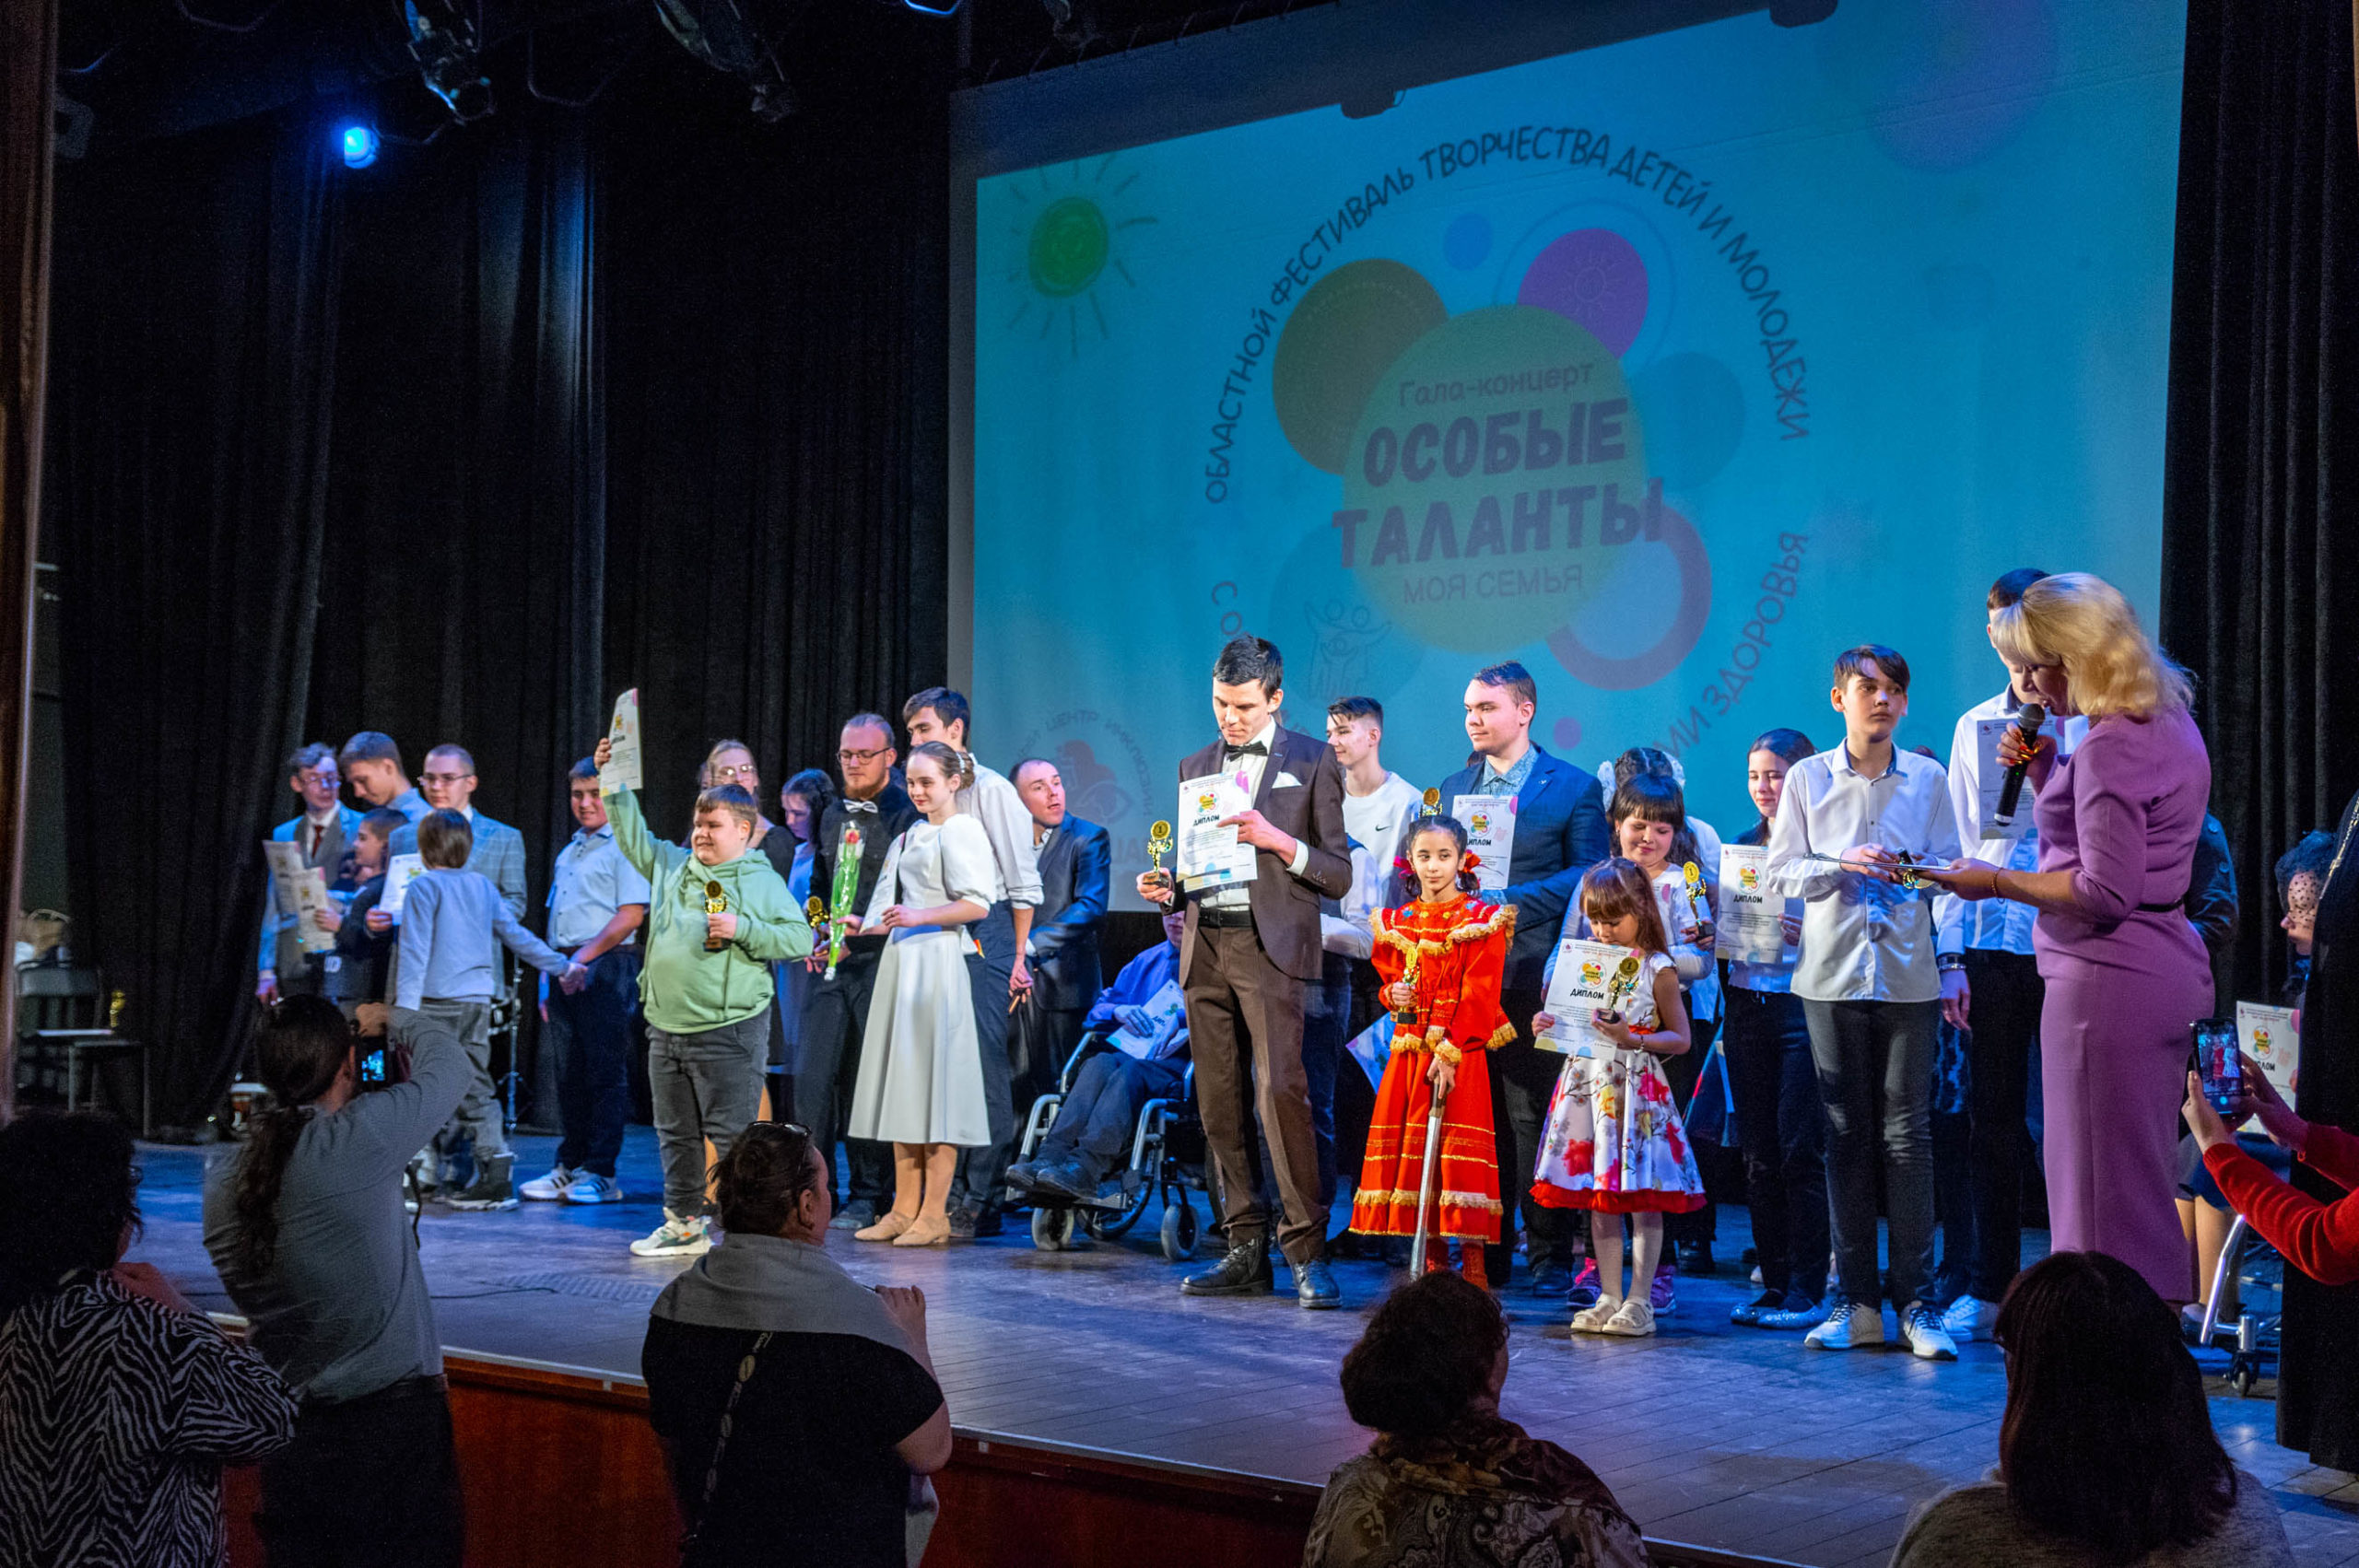 Инклюзивный фестиваль «Особые таланты» прошел в Орехово-Зуеве